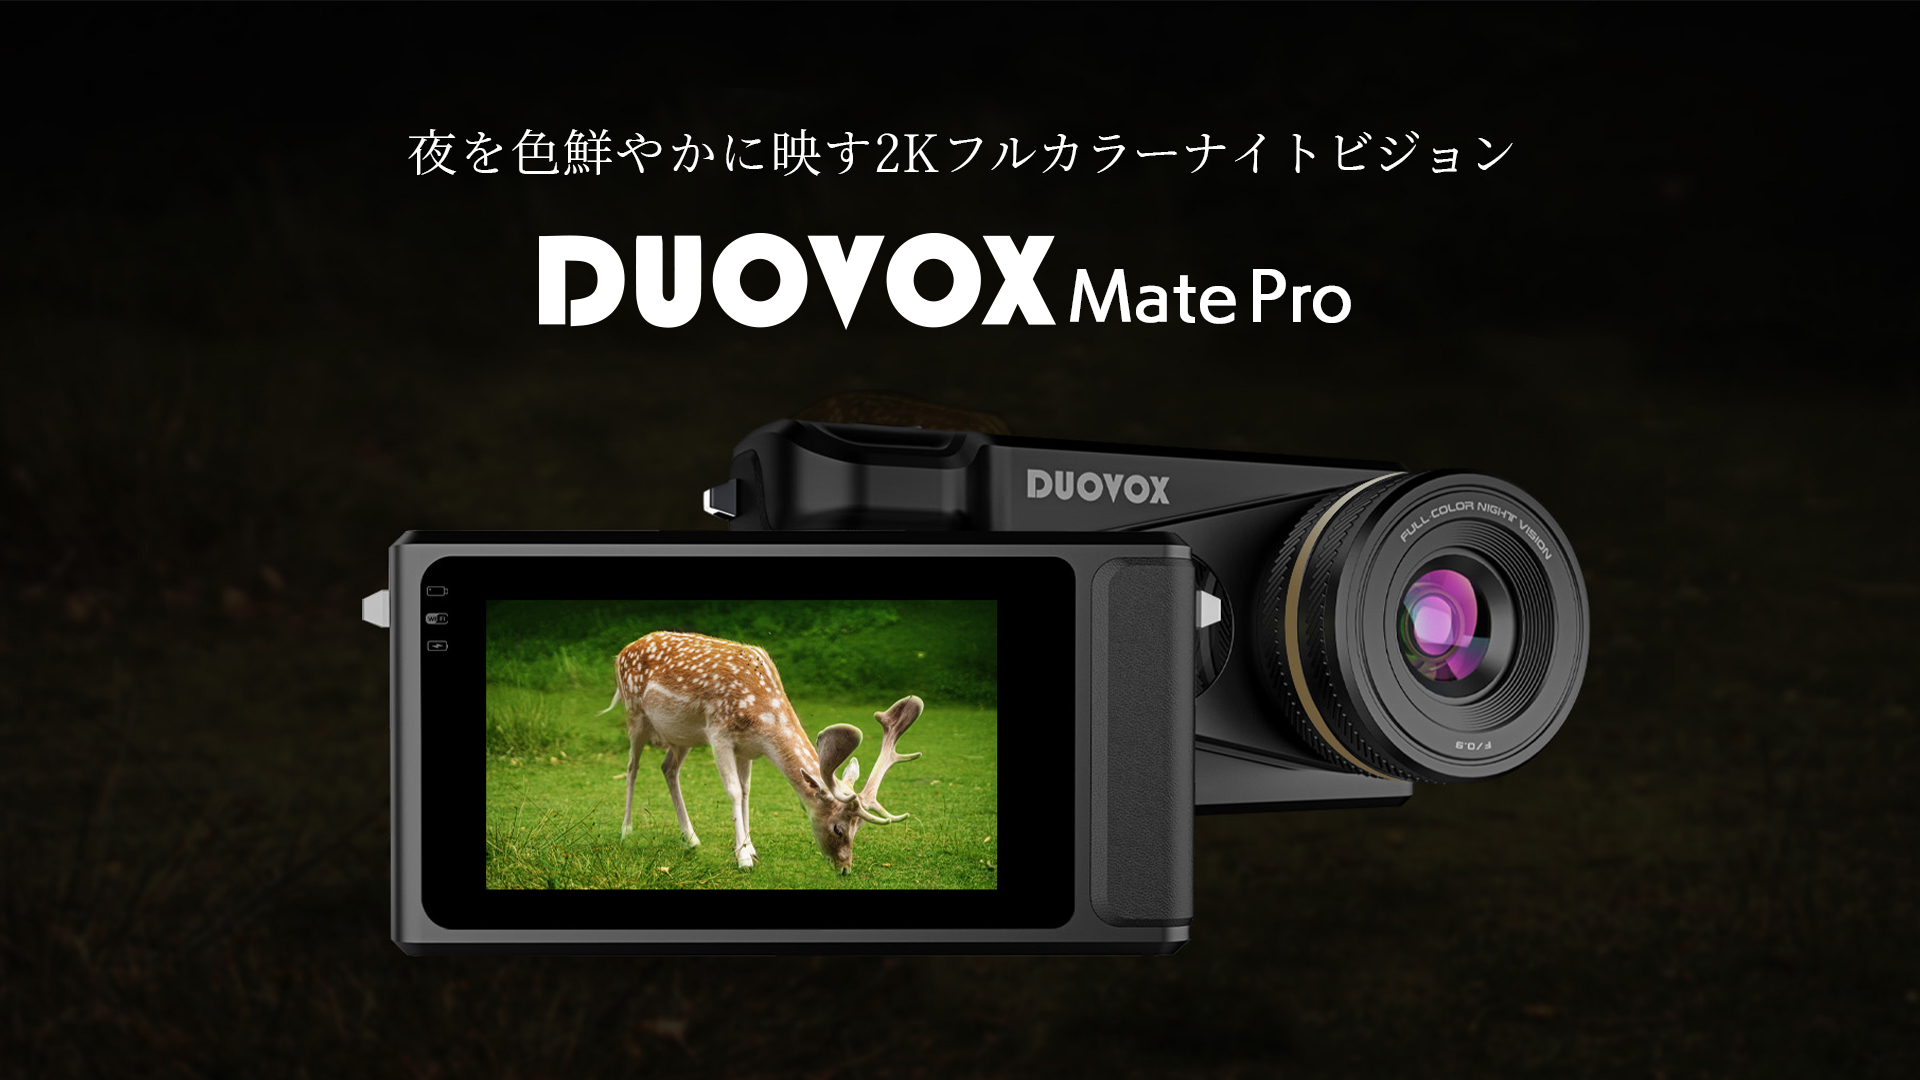 真っ暗な夜も昼間のように明るく撮れるデジタルカメラ『Duovox Mate 